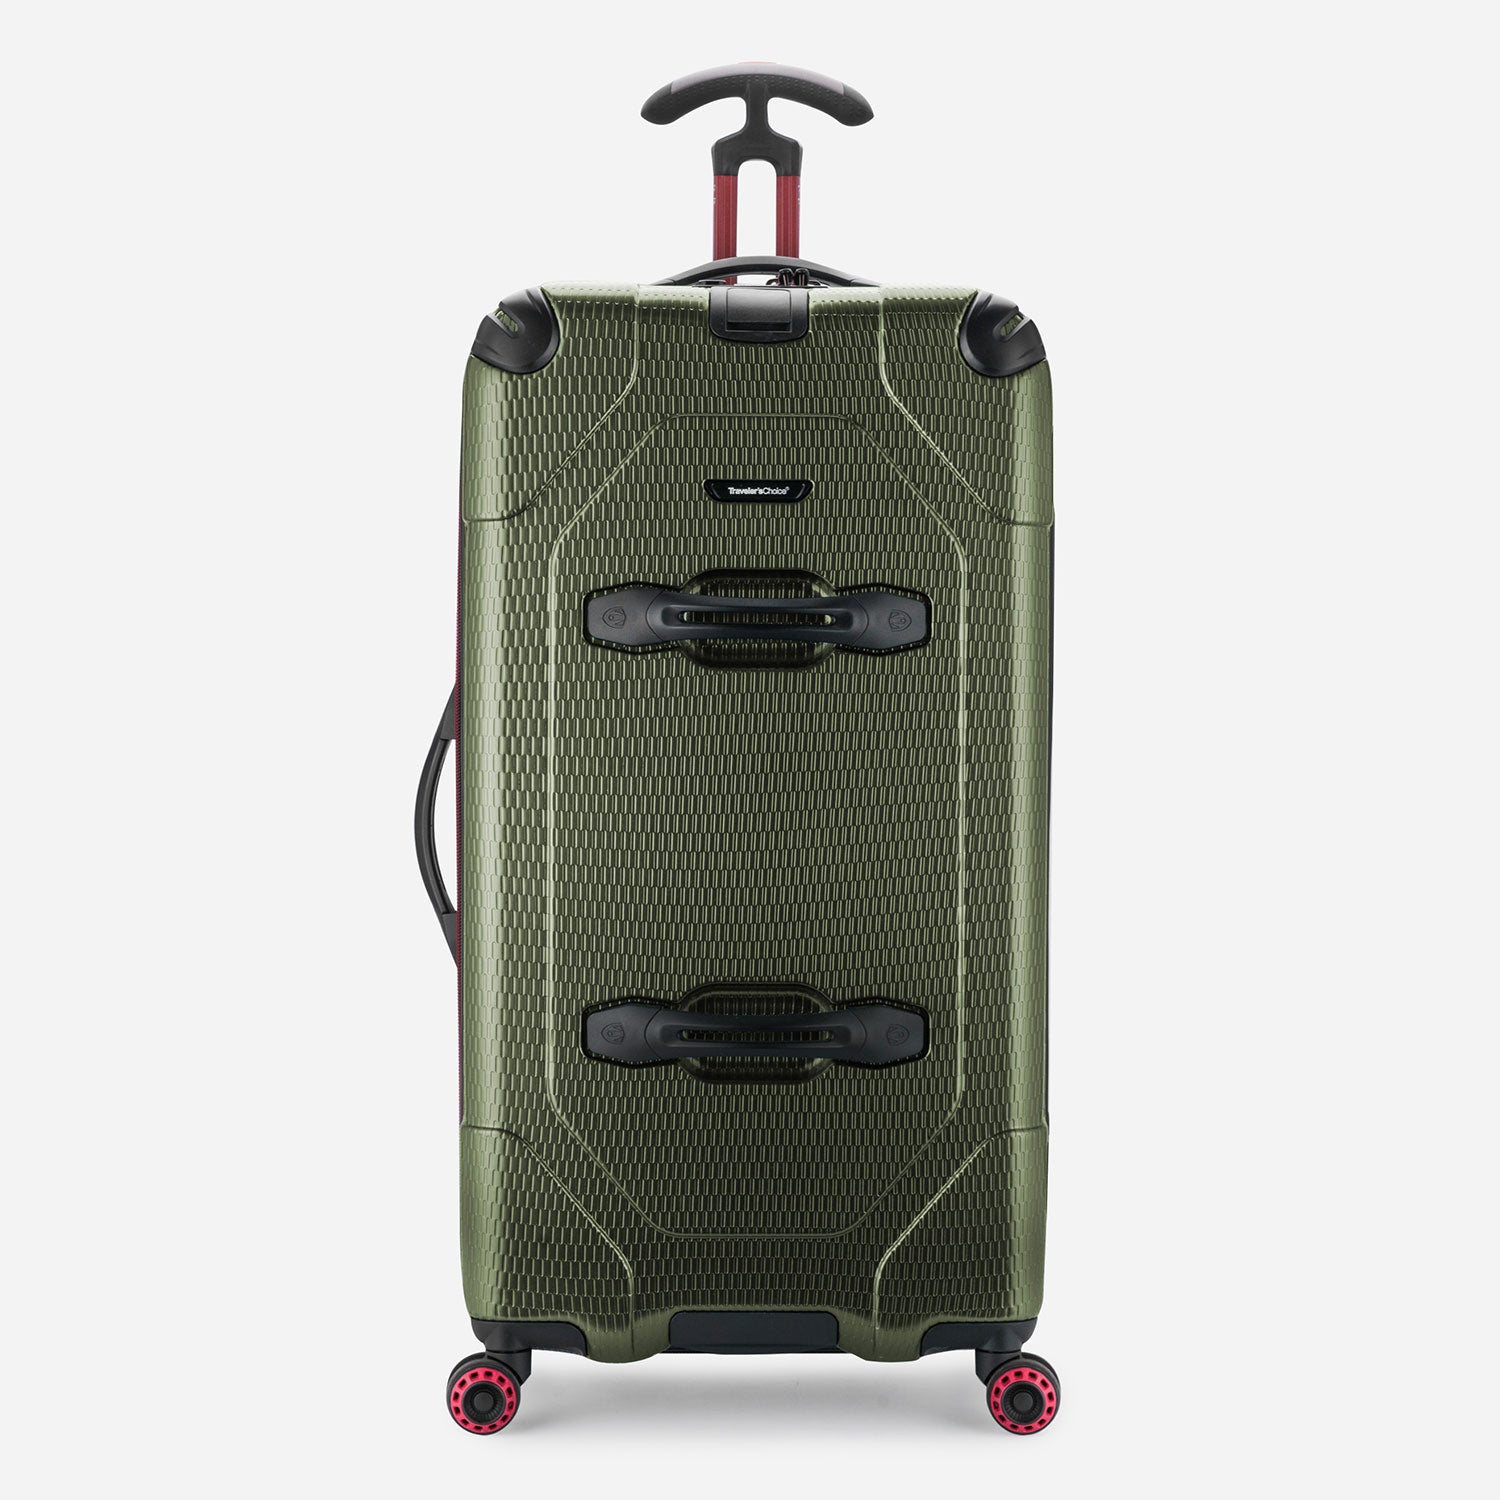 Large Suitcase & Luggage